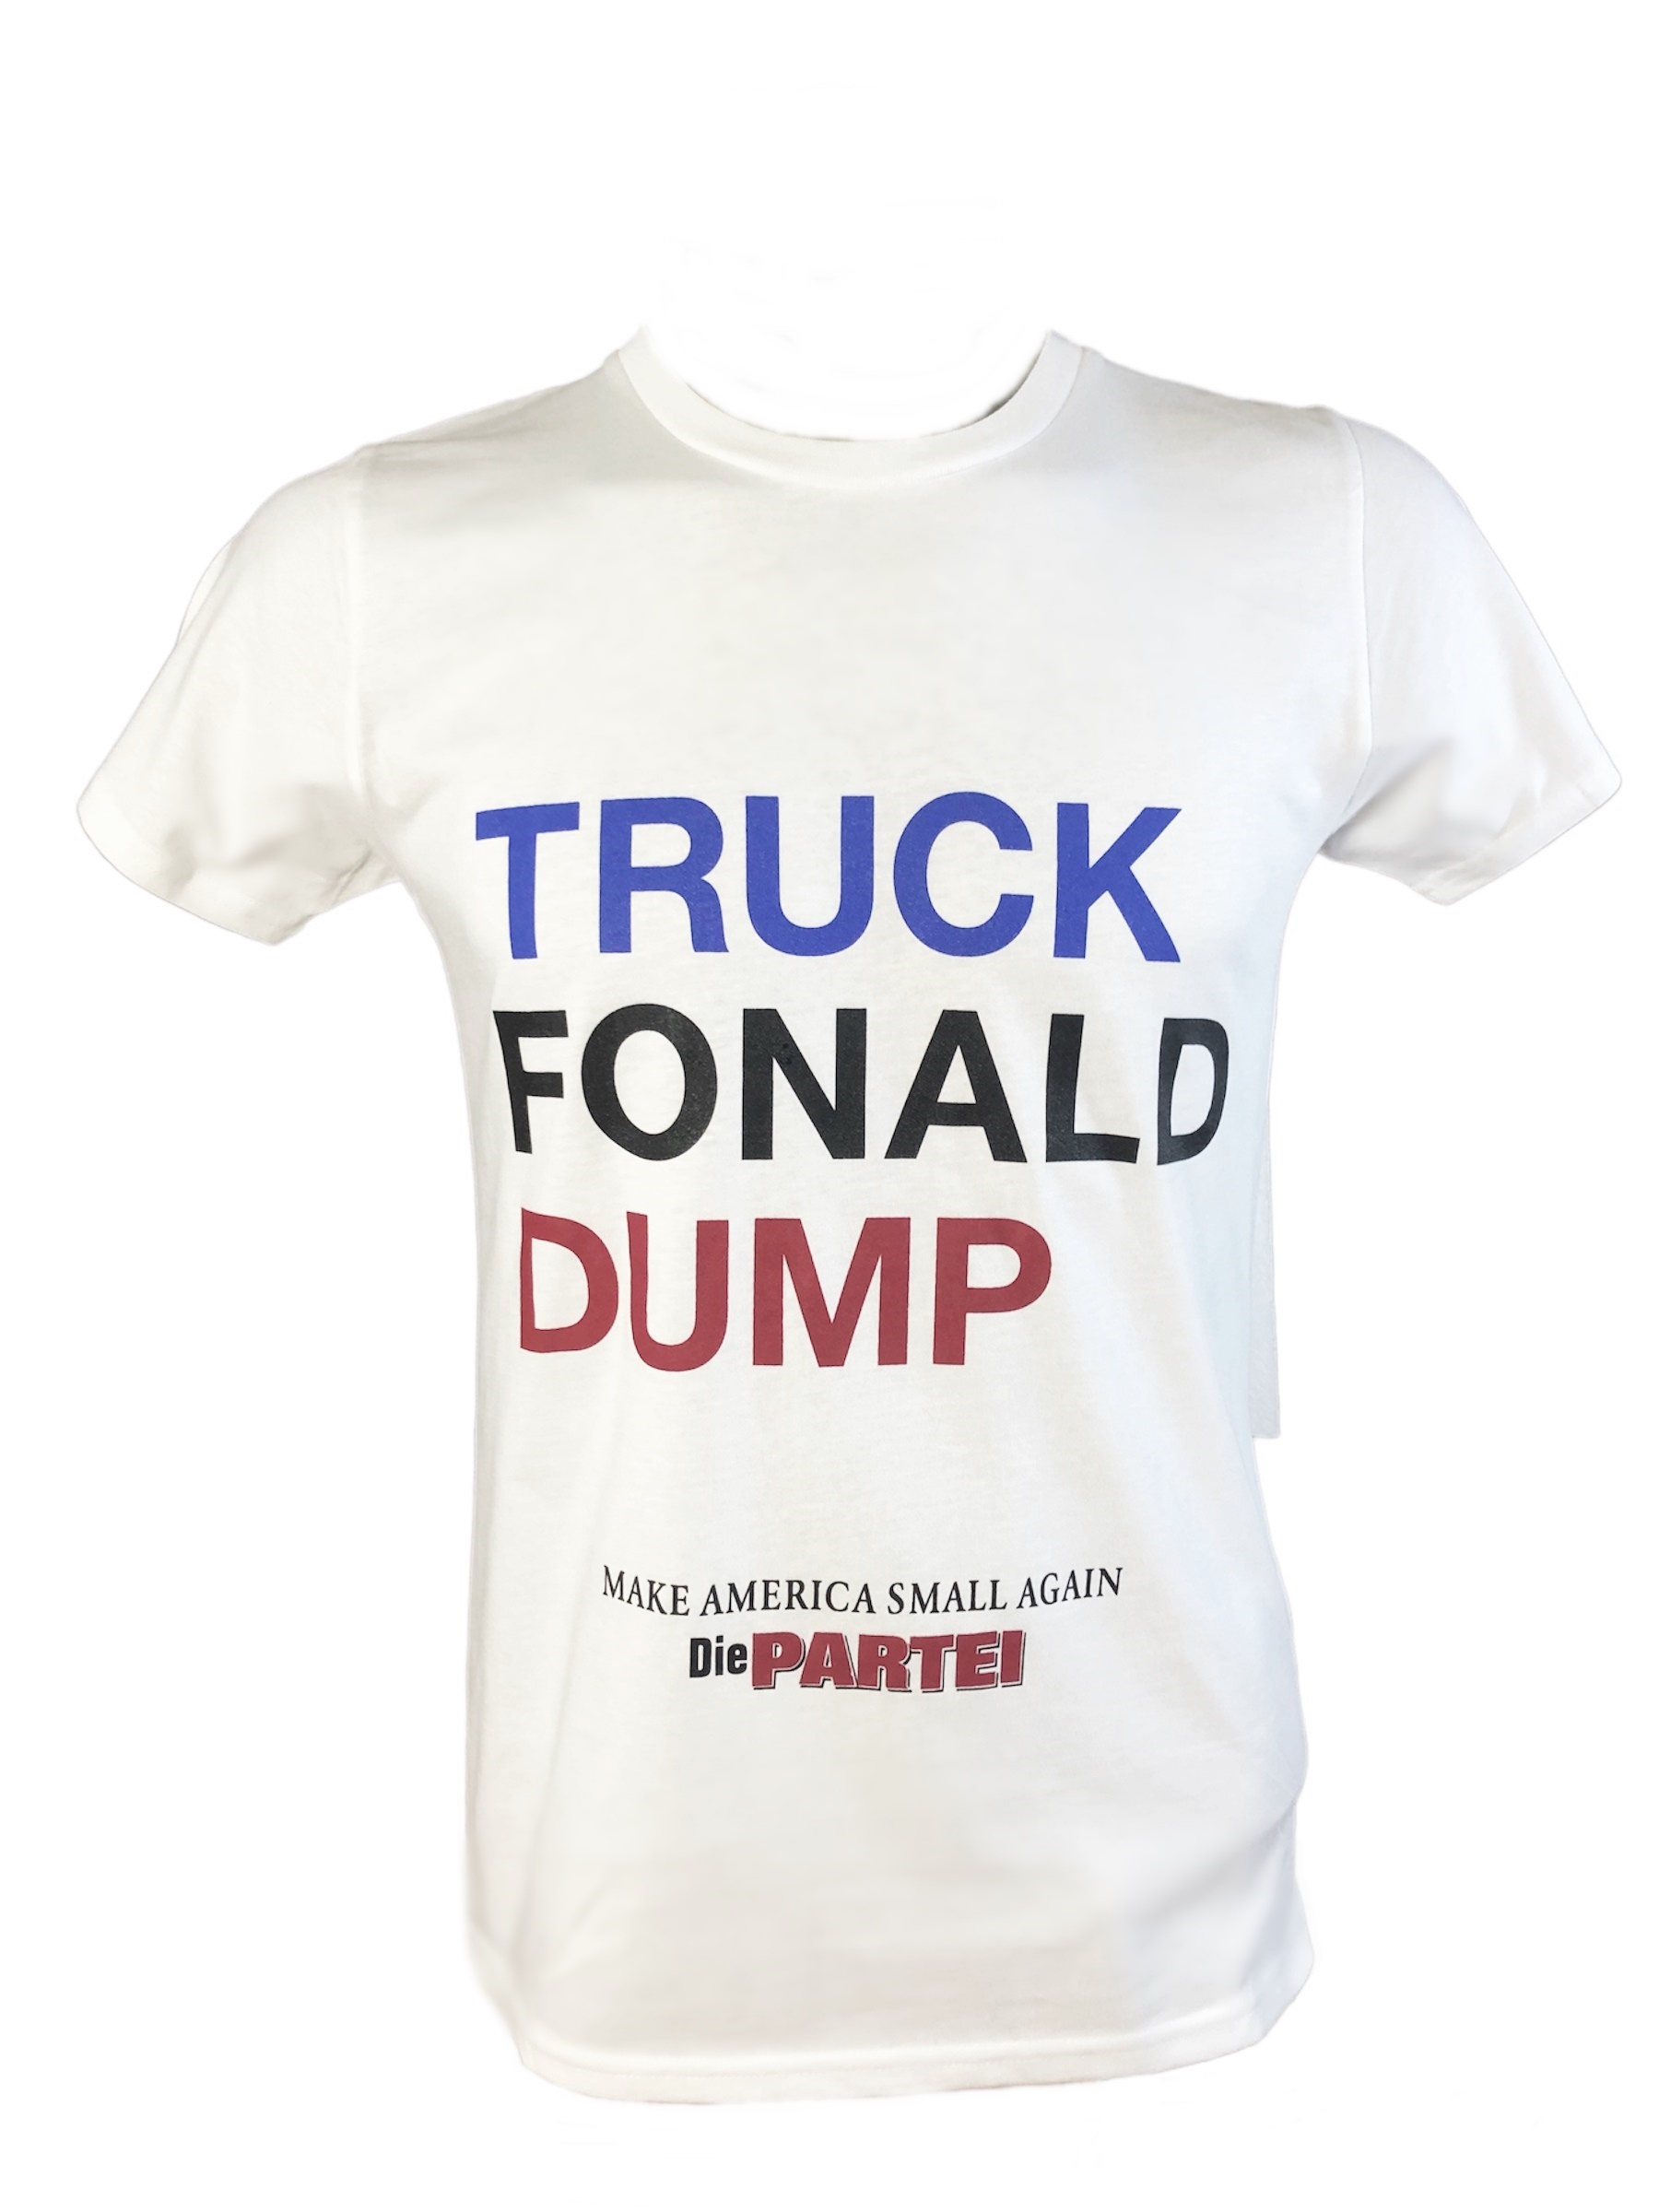 Shirt: Truck Fonald Dump